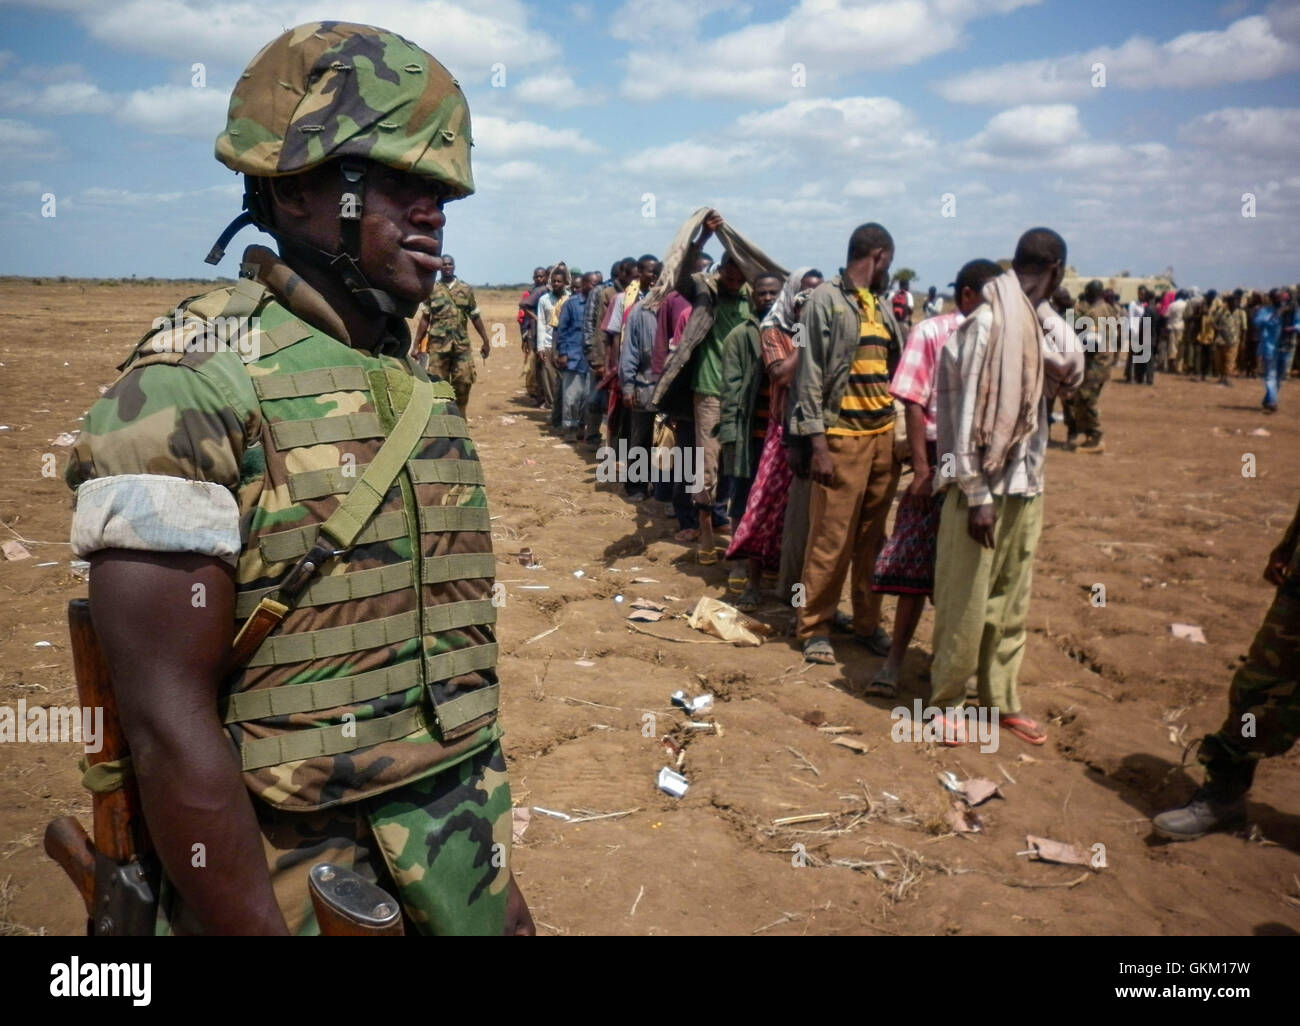 SOMALIA, Garsale: fotografía en un documento de fecha 22 de septiembre y liberado por el Grupo Africano Europea-estados unidas, Equipo de Apoyo a la información 23 de septiembre, un soldado ugandés de la Misión de la Unión Africana en Somalia (AMISOM) mira como miembros de Al Qaeda afiliadas del grupo militante Al Shabaab están en línea después de más de 200 combatientes se rindieron a las fuerzas de la AMISOM en Garsale, aproximadamente a 10km de la ciudad de Jowhar, 80km al norte de la capital, Mogadiscio. Los militantes desconectado tras los combates entre militantes en la región en la cual 8 Al Shabaab resultaron muertos, entre ellos dos altos Foto de stock